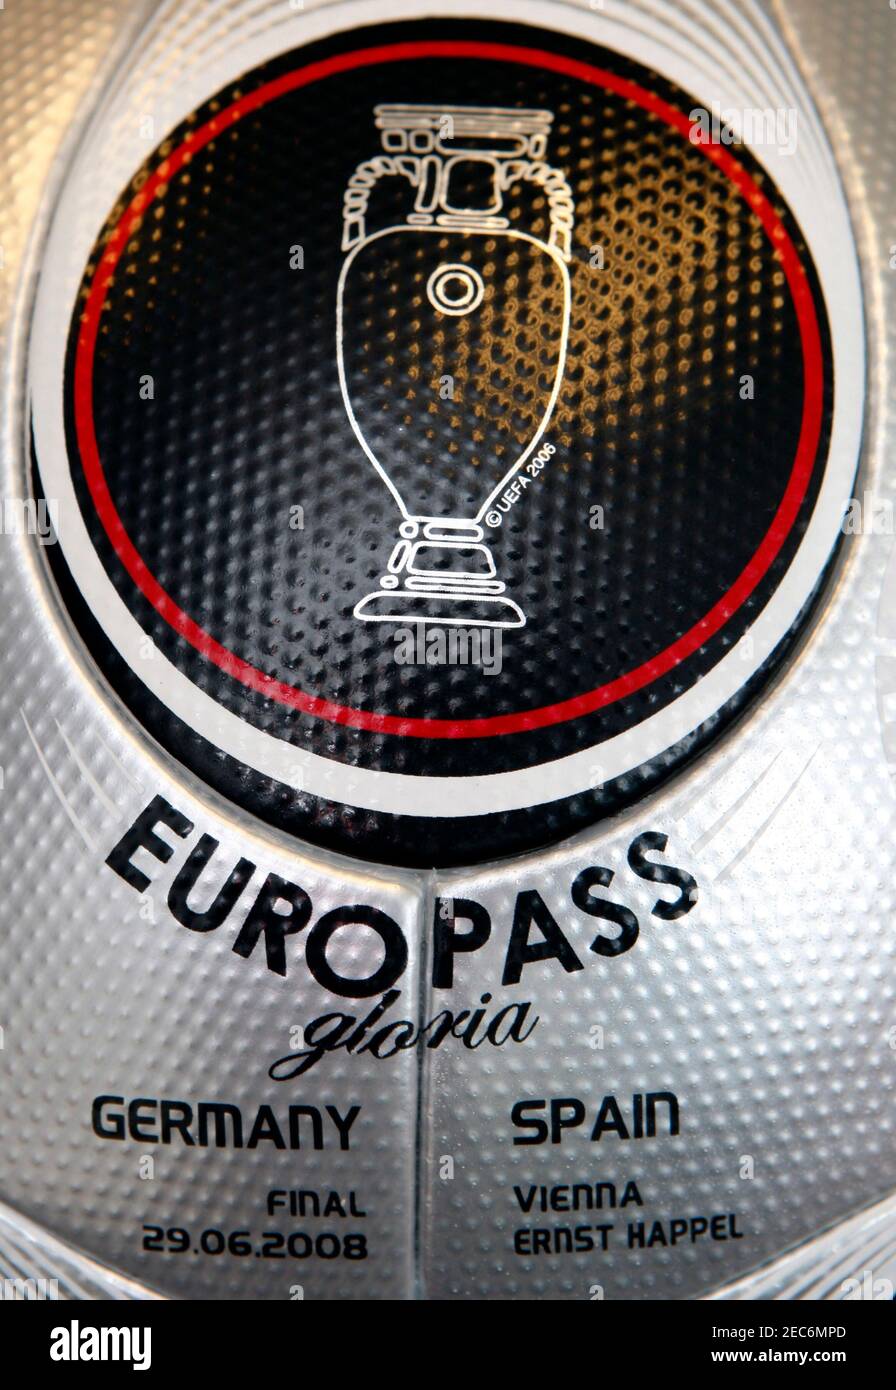 Football - le ballon officiel de match de l'UEFA Euro 2008 pour la finale -  Vienne - 28/6/08 le ballon de match Adidas Europass 'Gloria' à utiliser  pour la finale crédit obligatoire: